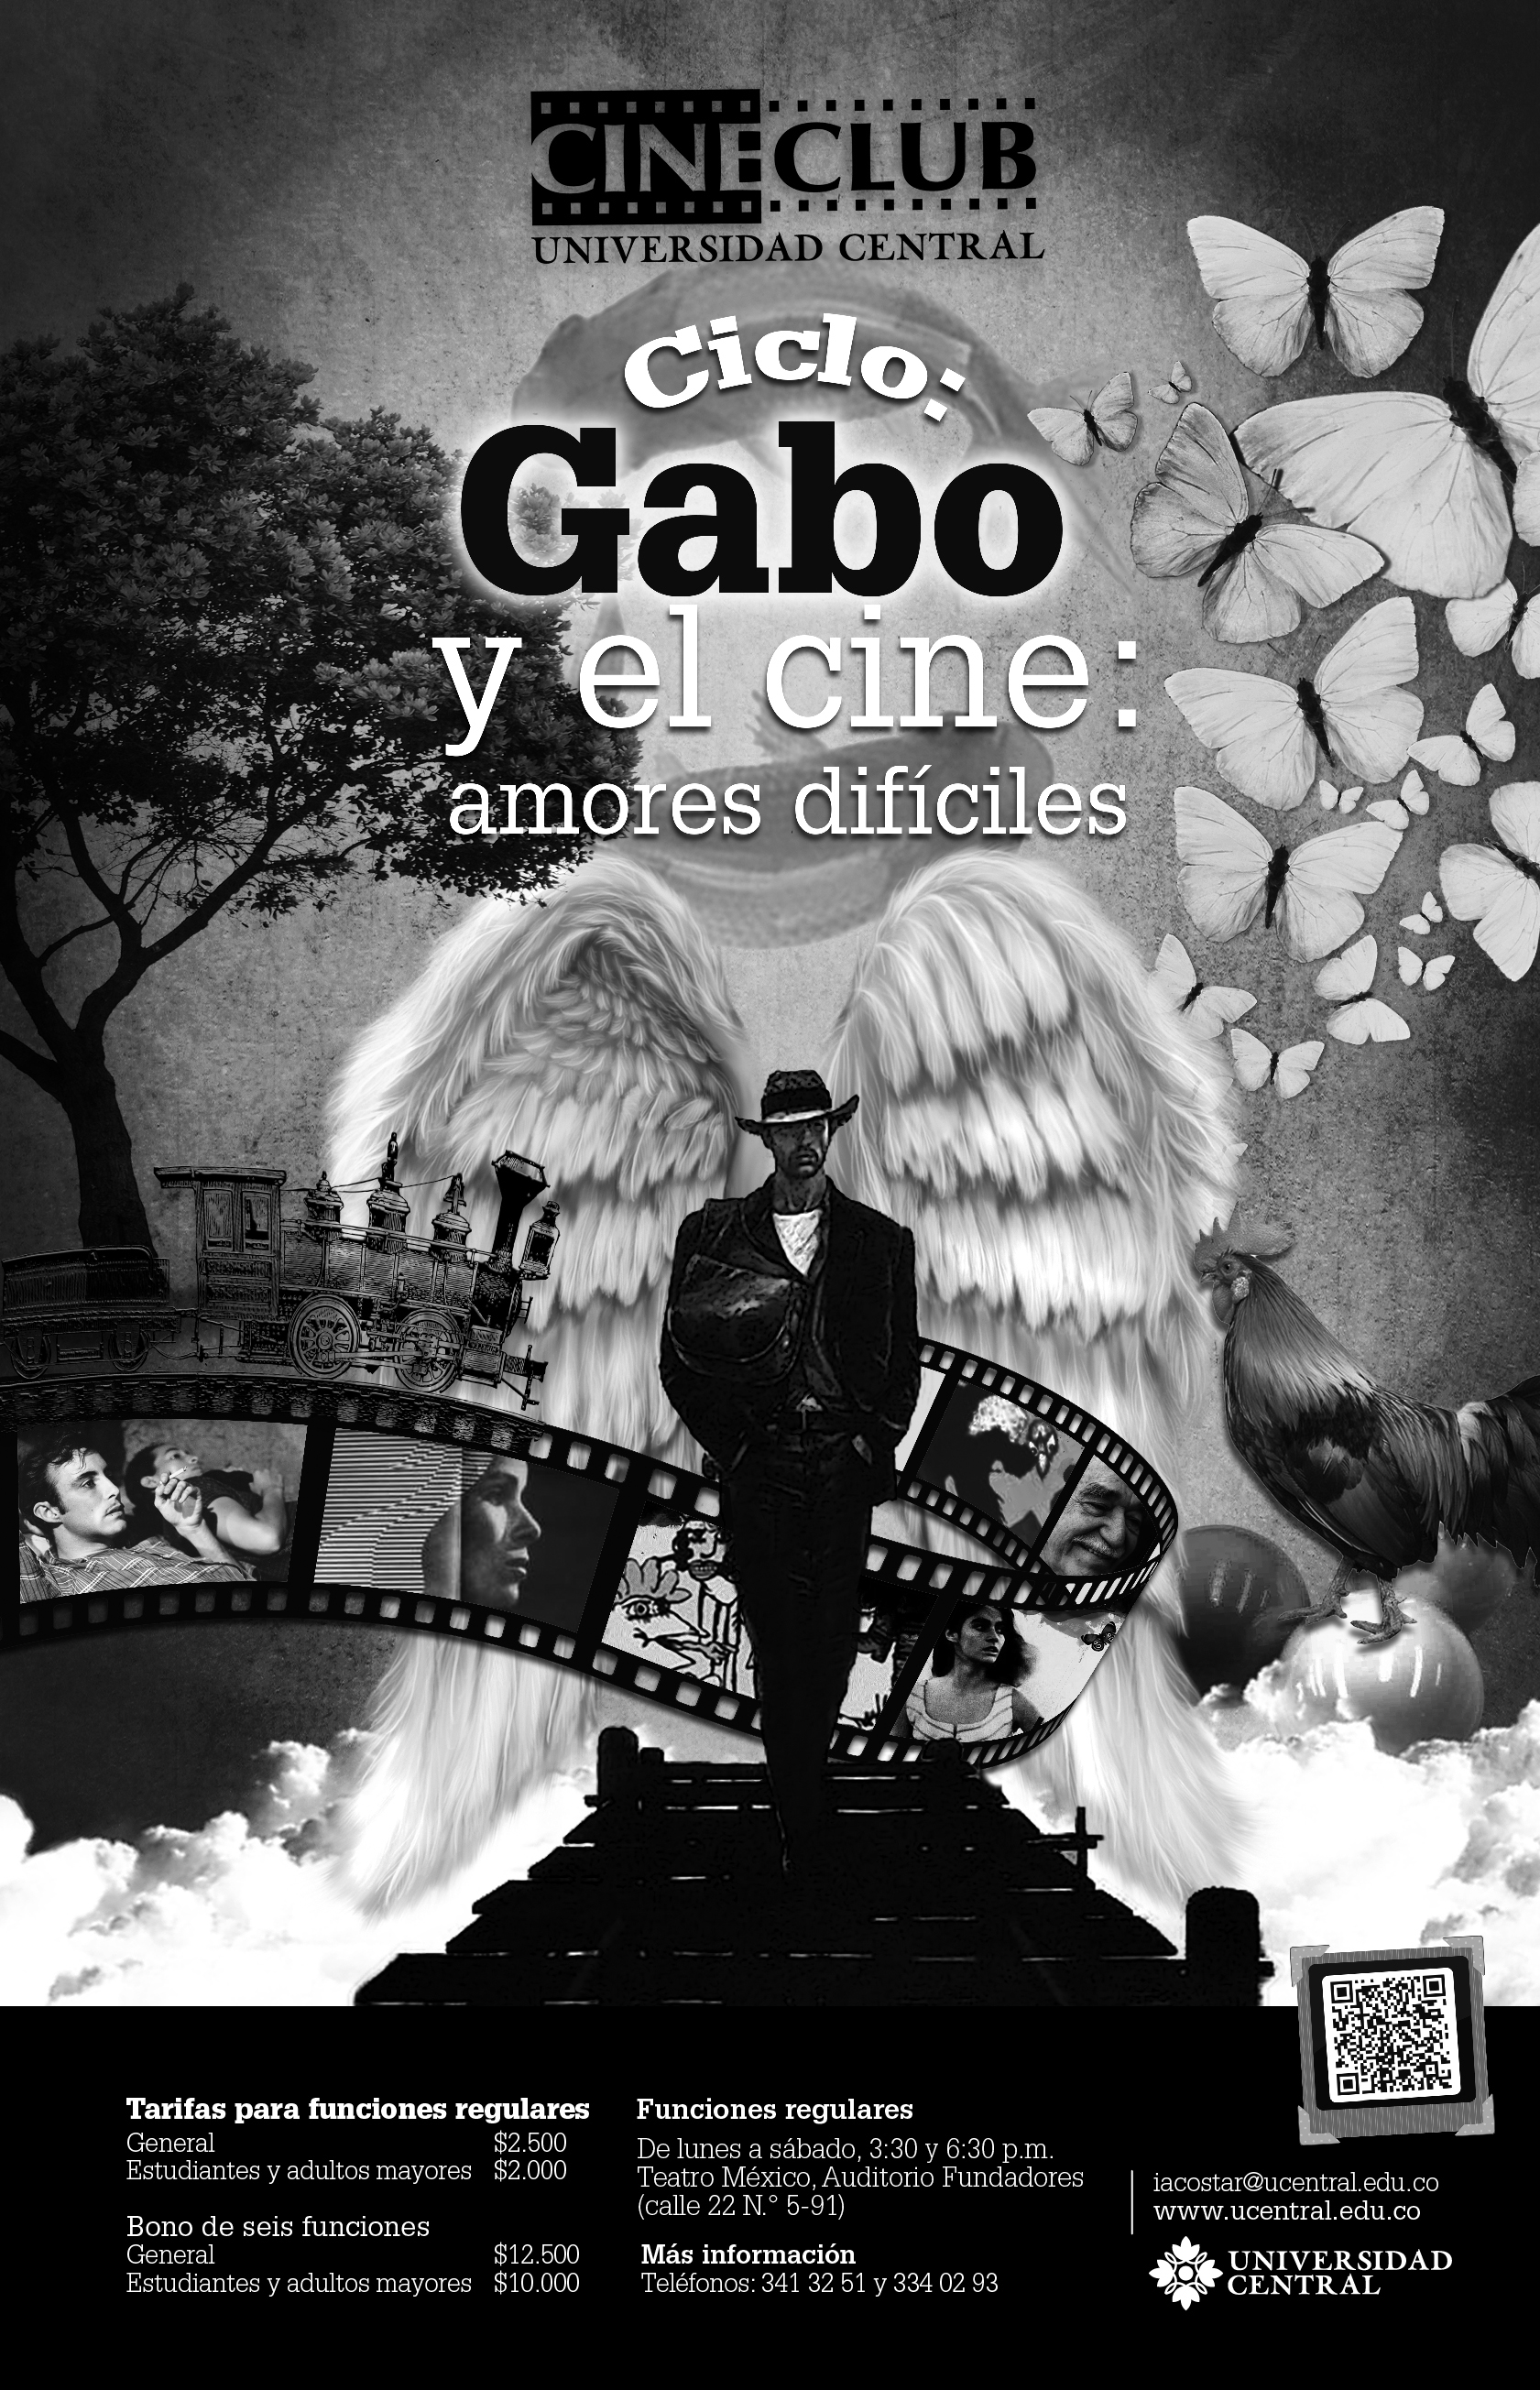 Gabo y el cine: amores difíciles